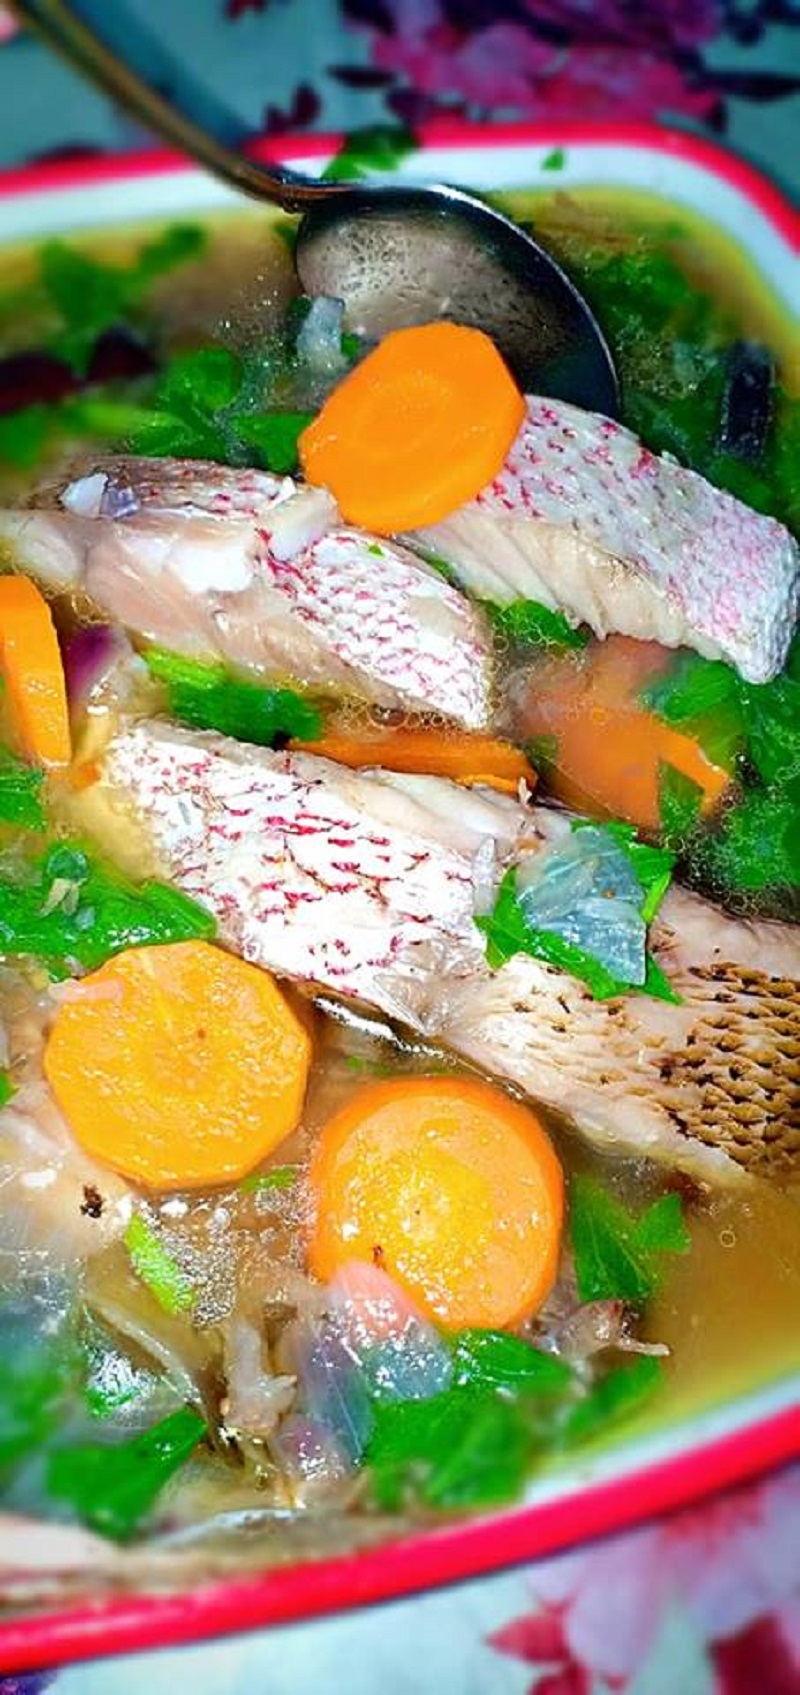 Resepi Sup Ikan Merah (Mesti Menjadi) Bidadari.My